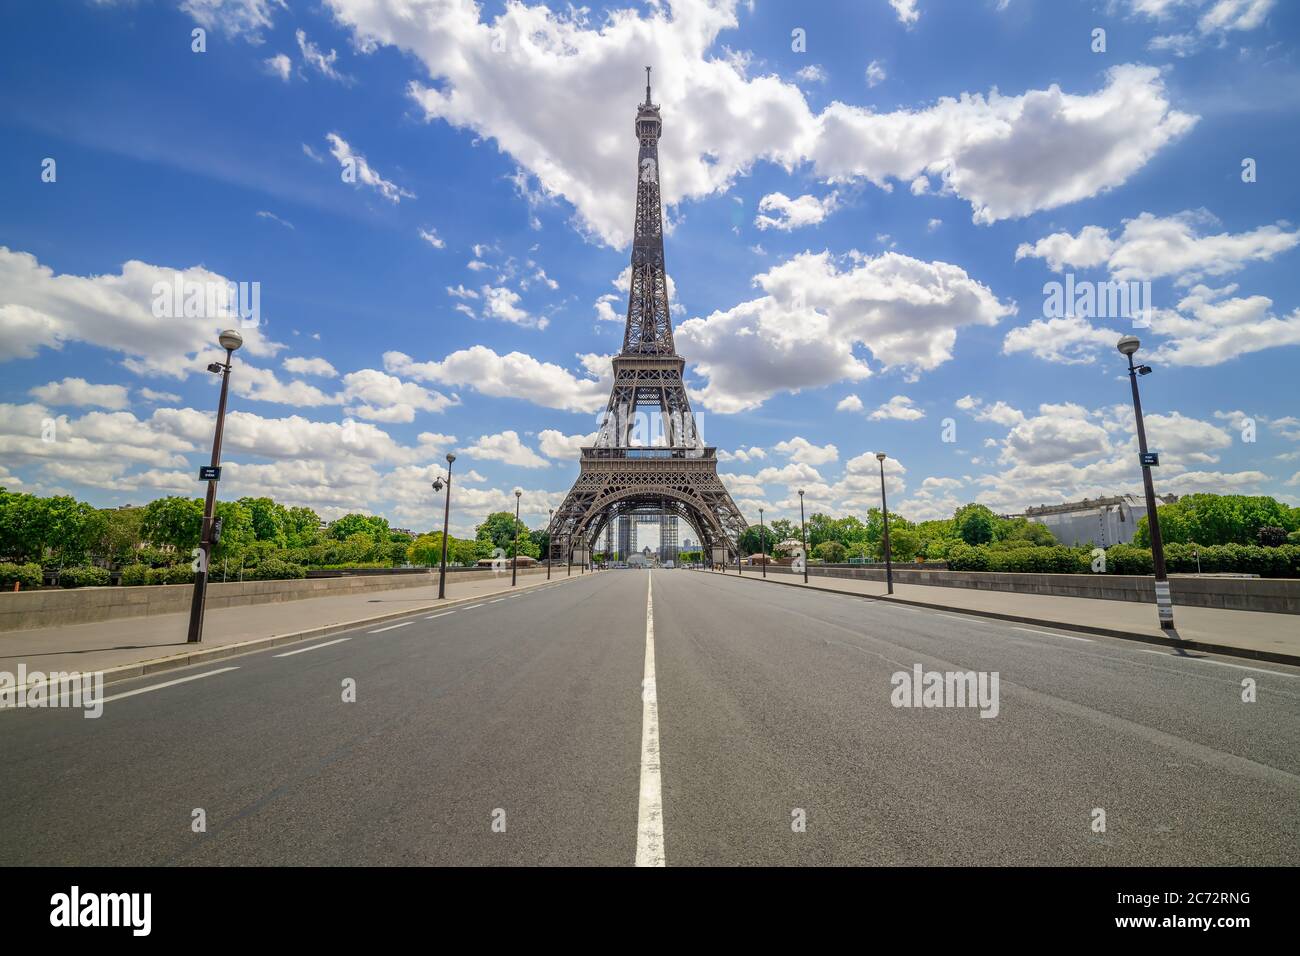 Der berühmte eiffelturm von paris, frankreich Stockfoto